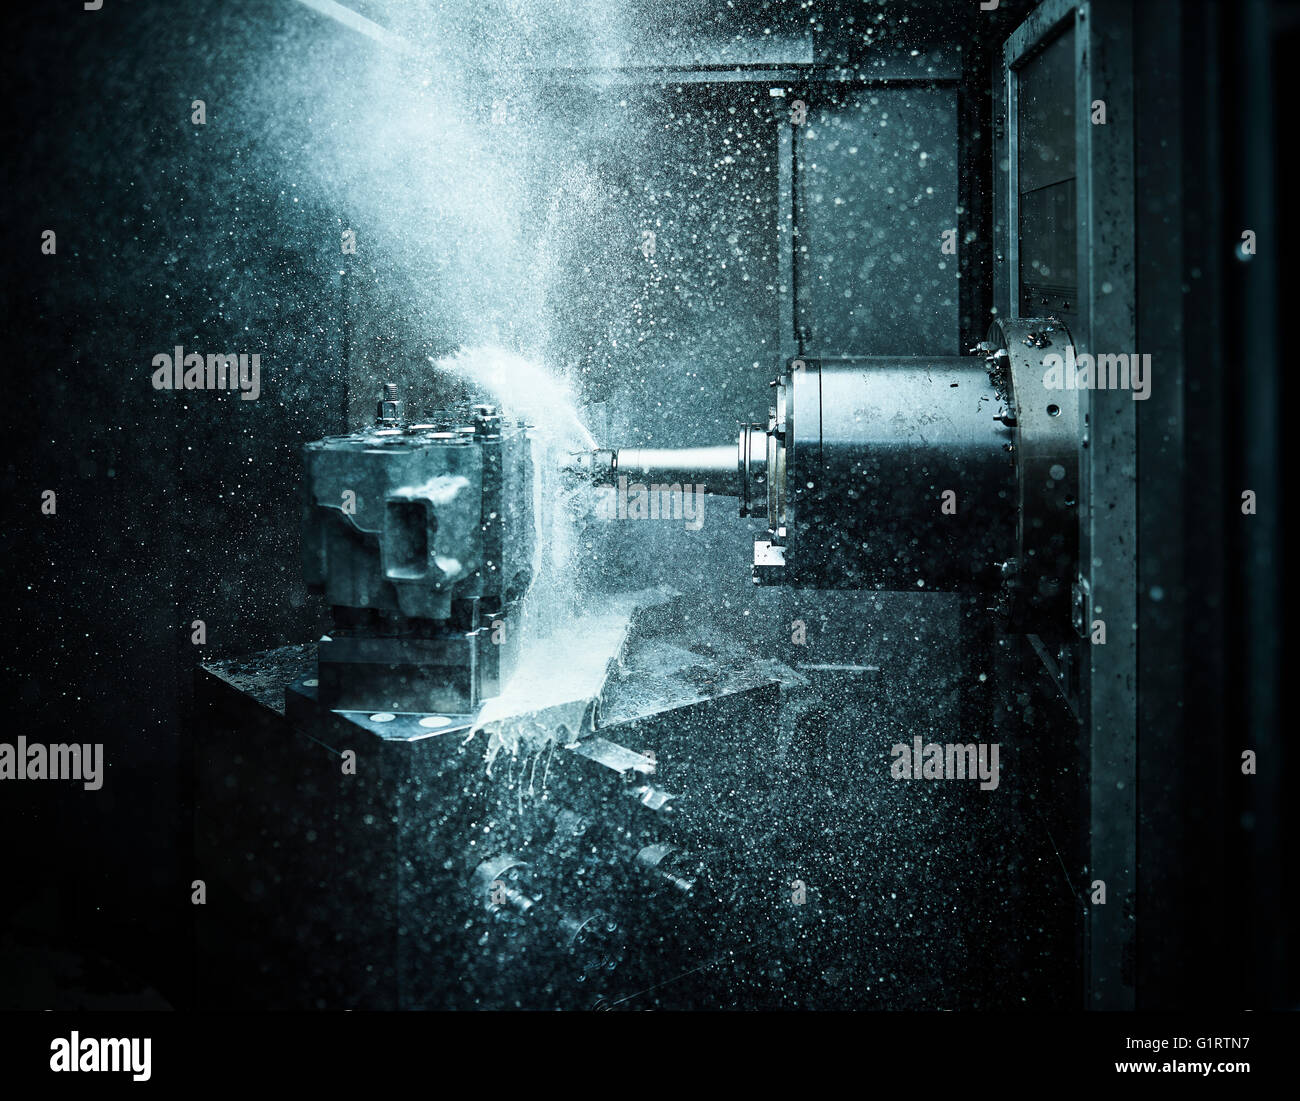 La metallurgia, la macchina CNC, noioso e macchina di fresatura fresatura all'interno di una testa di un cilindro, lubrificato e raffreddato con liquido di raffreddamento Foto Stock